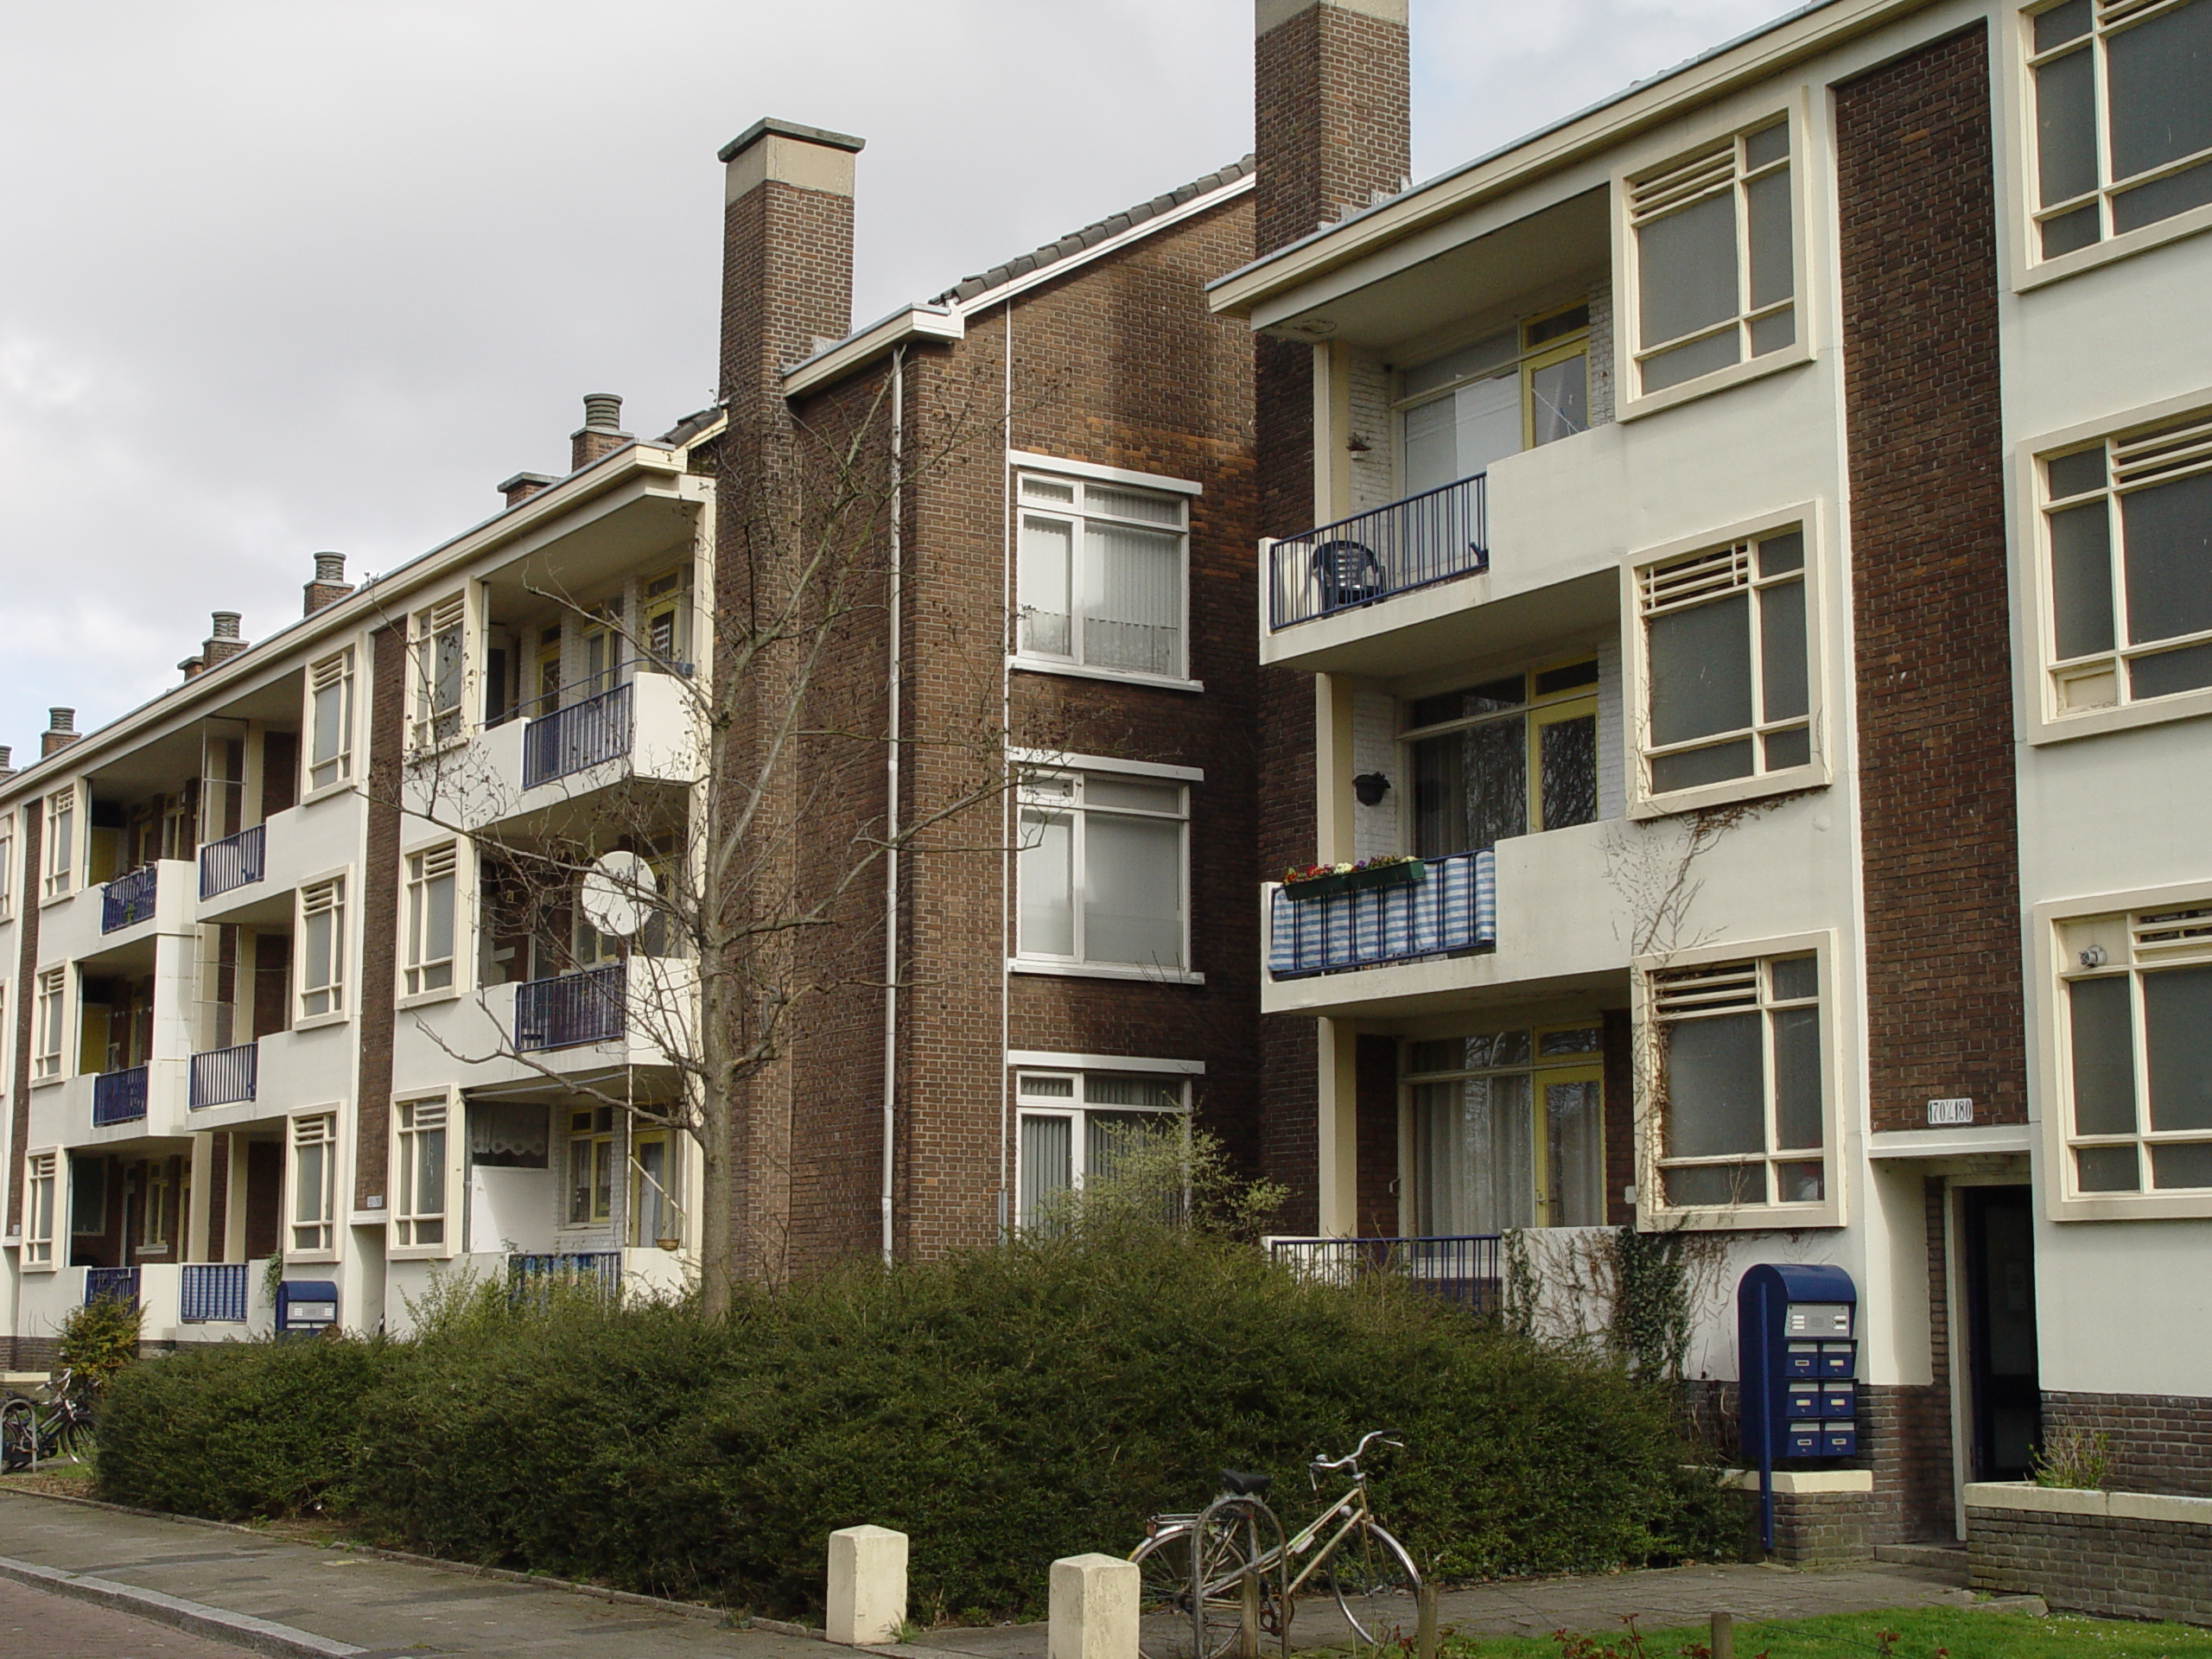 Van Zegwaardstraat 132, 2274 VK Voorburg, Nederland